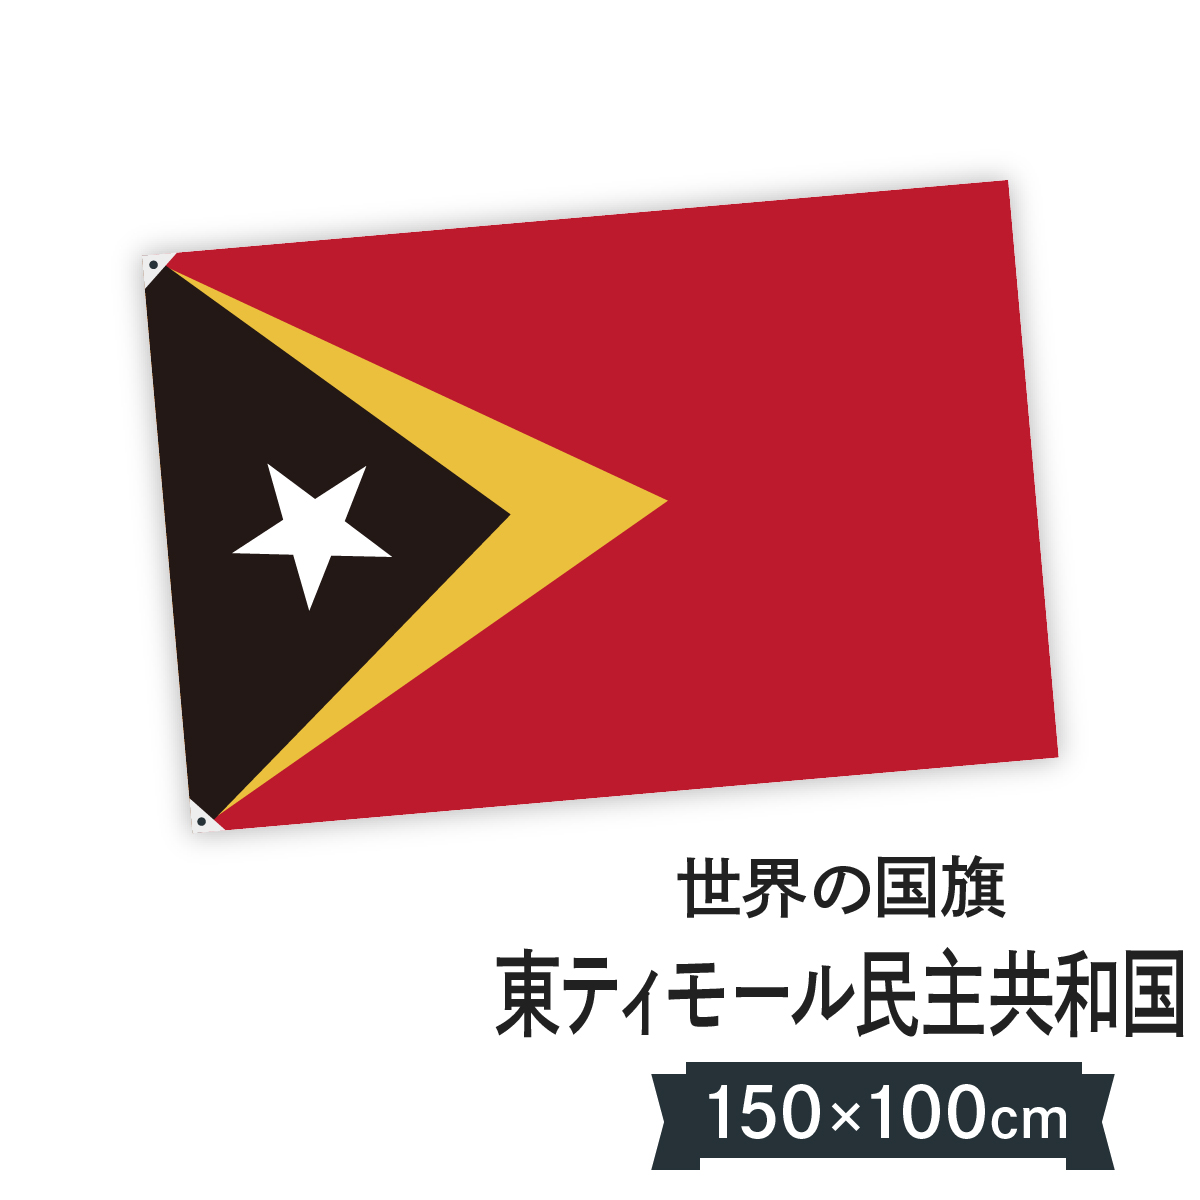 楽天市場 東ティモール民主共和国 国旗 W150cm H100cm グッズプロ